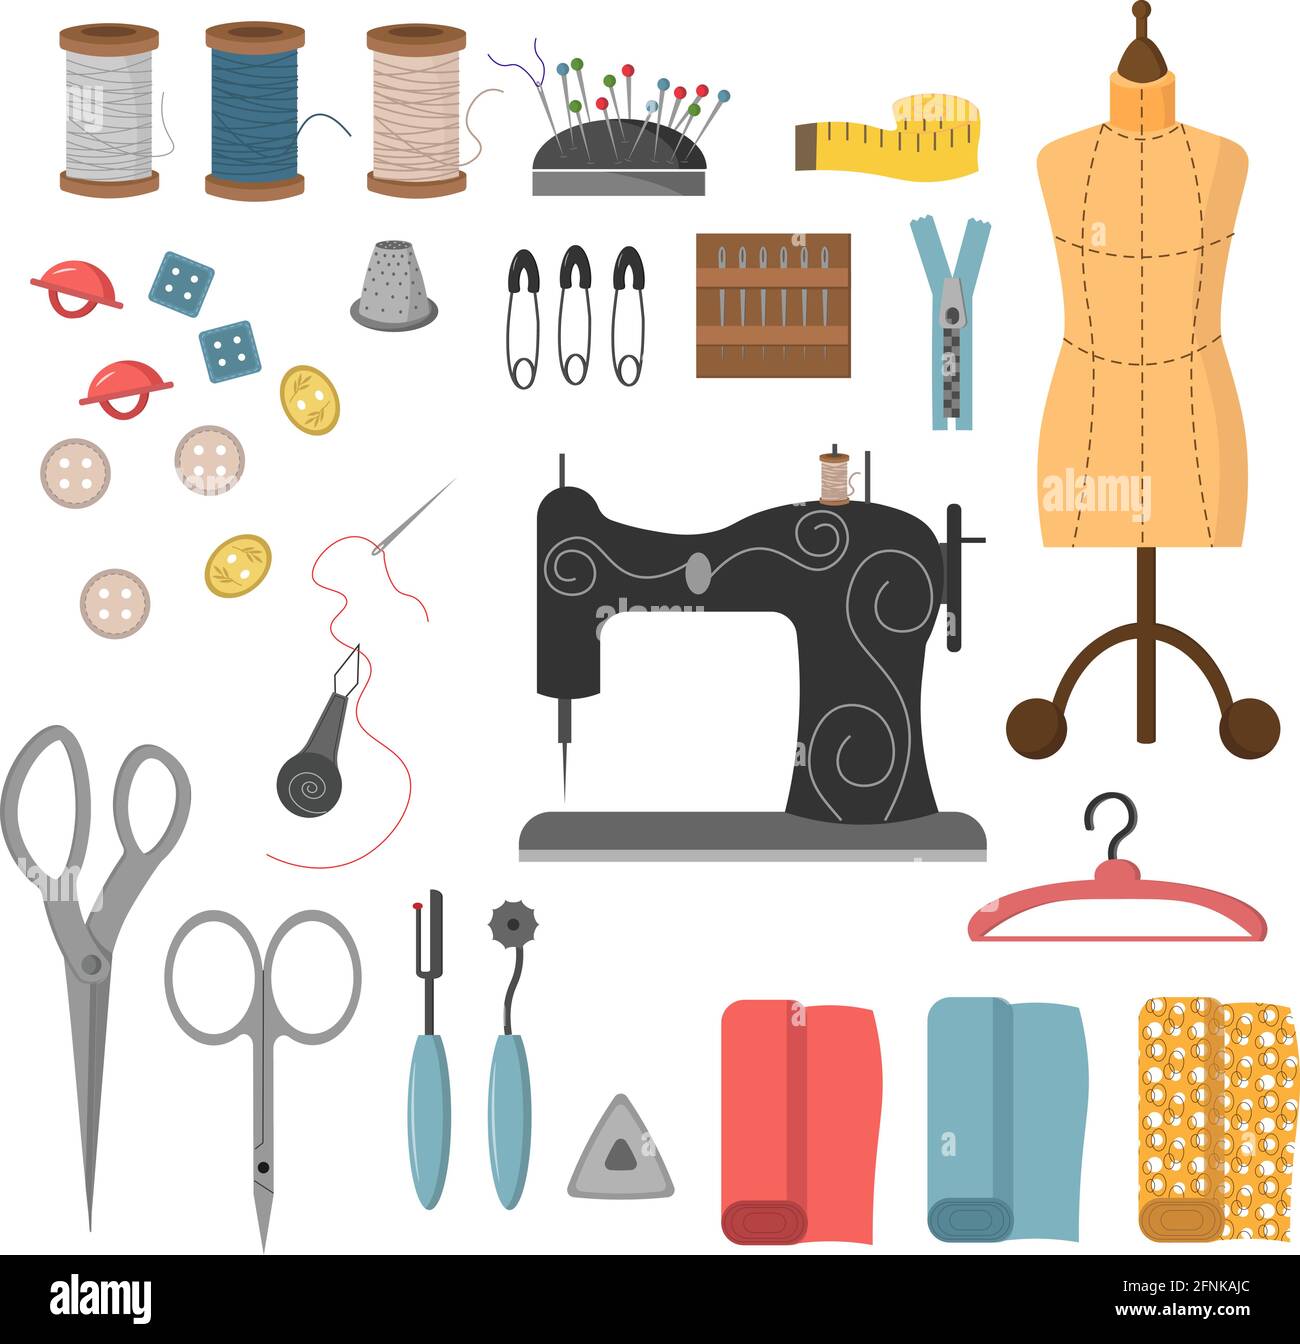 Eine Reihe von Nähwerkzeugen. Fäden, Nadeln, Knöpfe und Nähmaschine,  Schaufensterpuppen und Stoffschnitte Stock-Vektorgrafik - Alamy